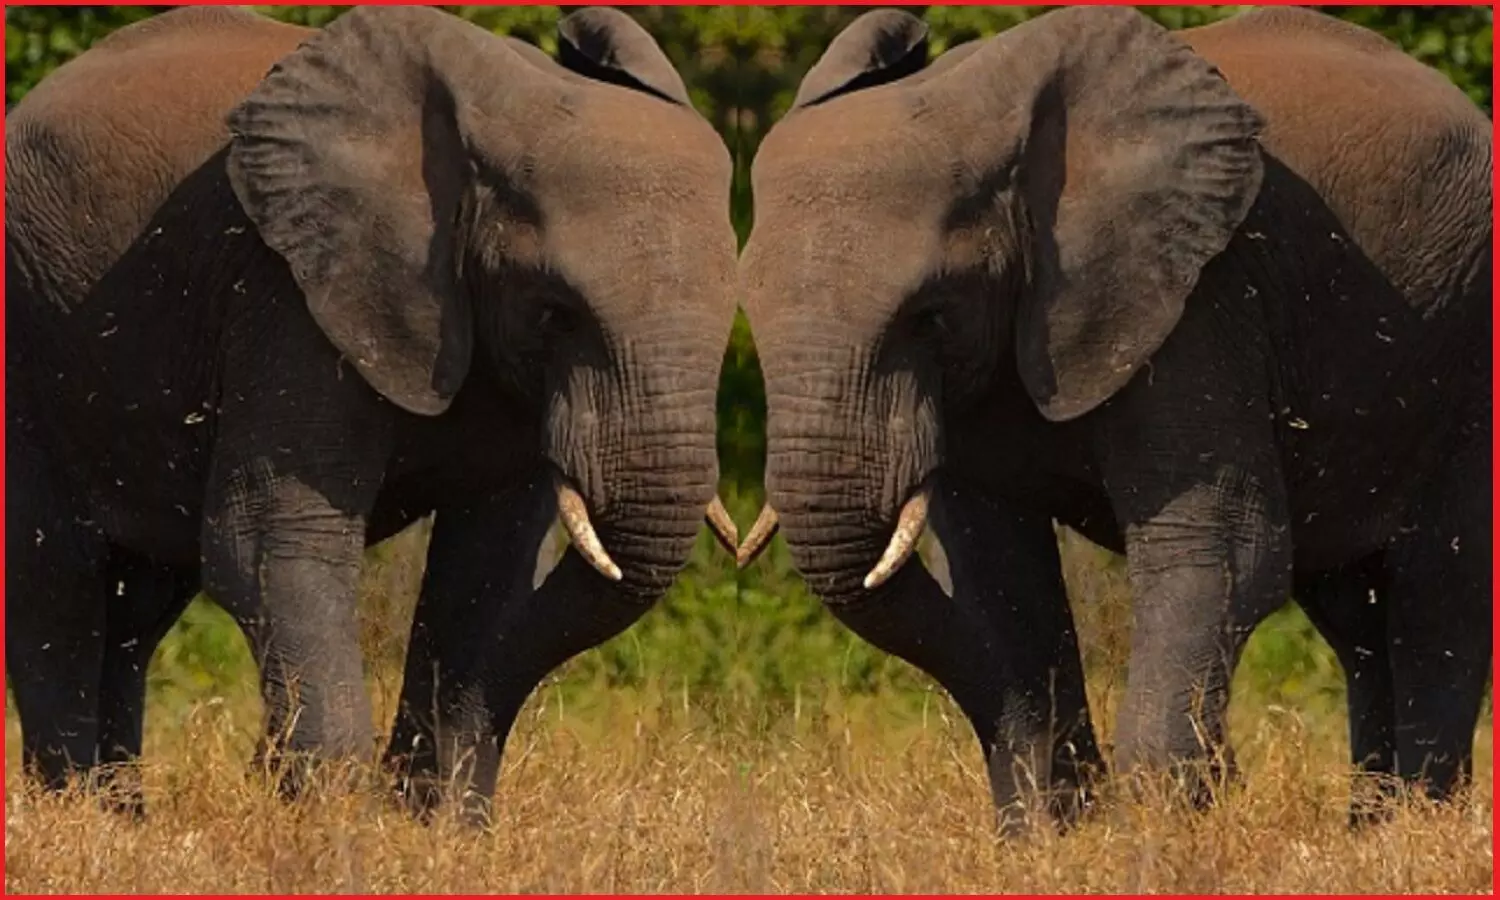 इंसानों की तरह हाथी भी एक-दूसरे से नाम लेकर करते हैं बातचीत, रहते हैं बड़े समूहों में, अध्ययन में हुआ खुलासा